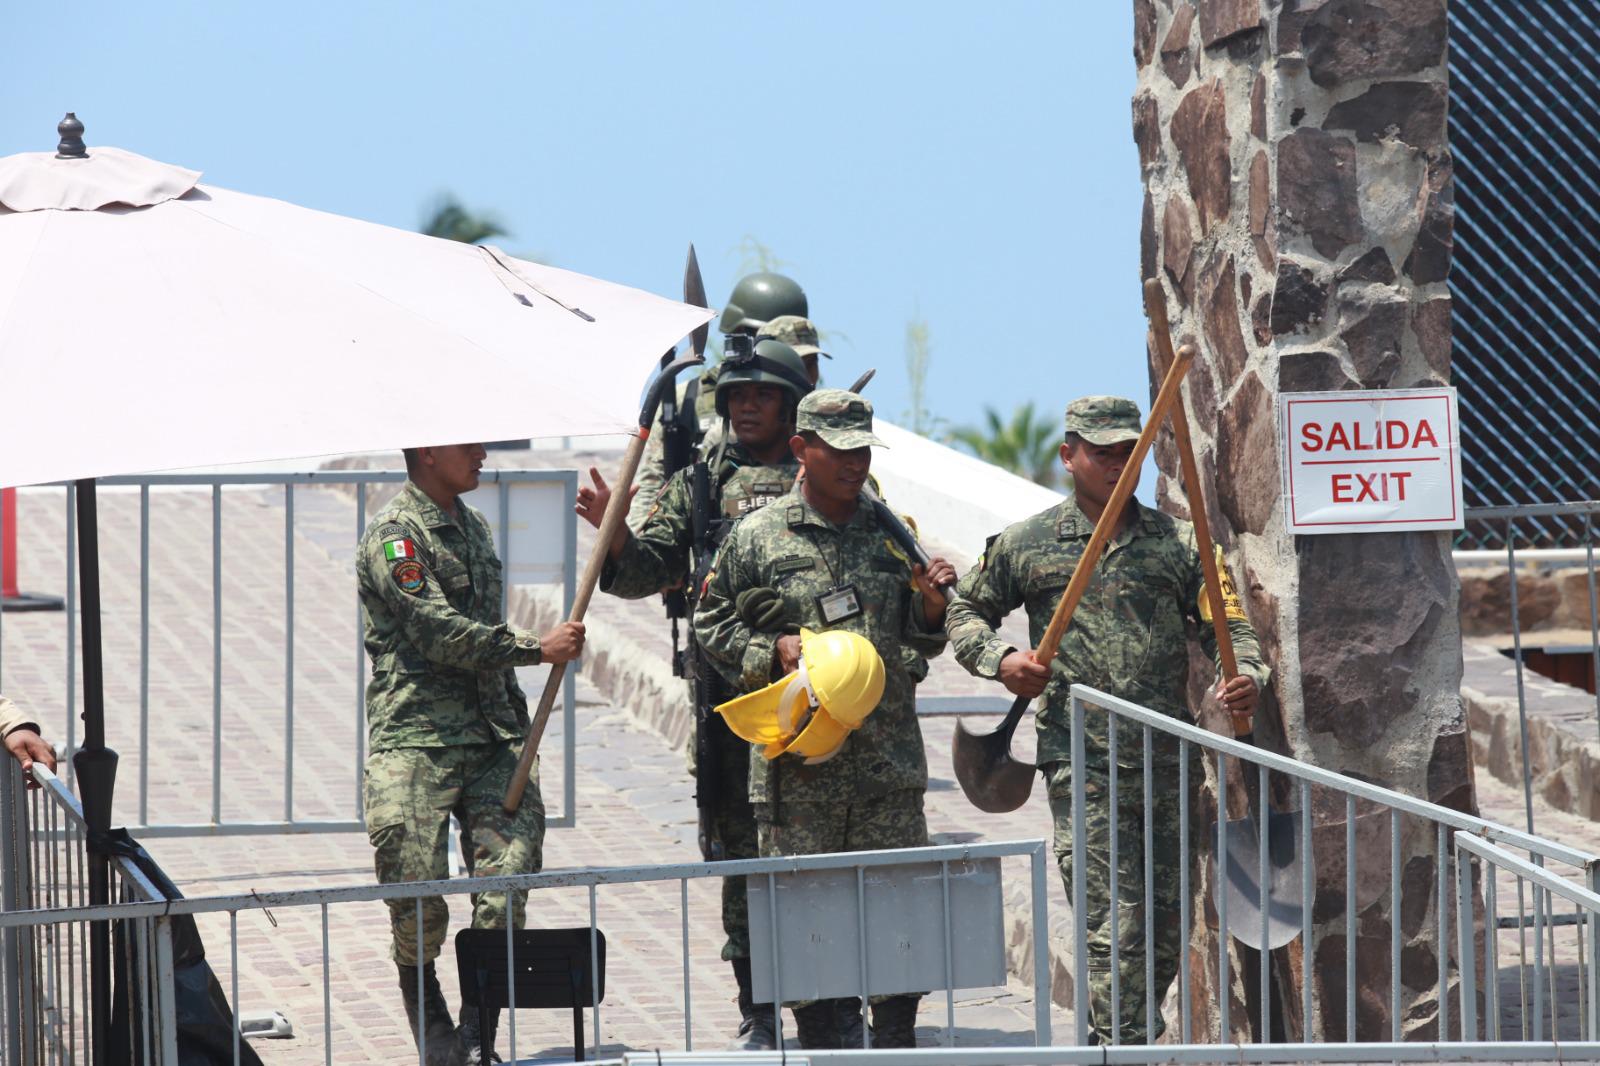 $!Para evitar riesgos, sigue cerrado el acceso al Faro de Mazatlán tras deslave